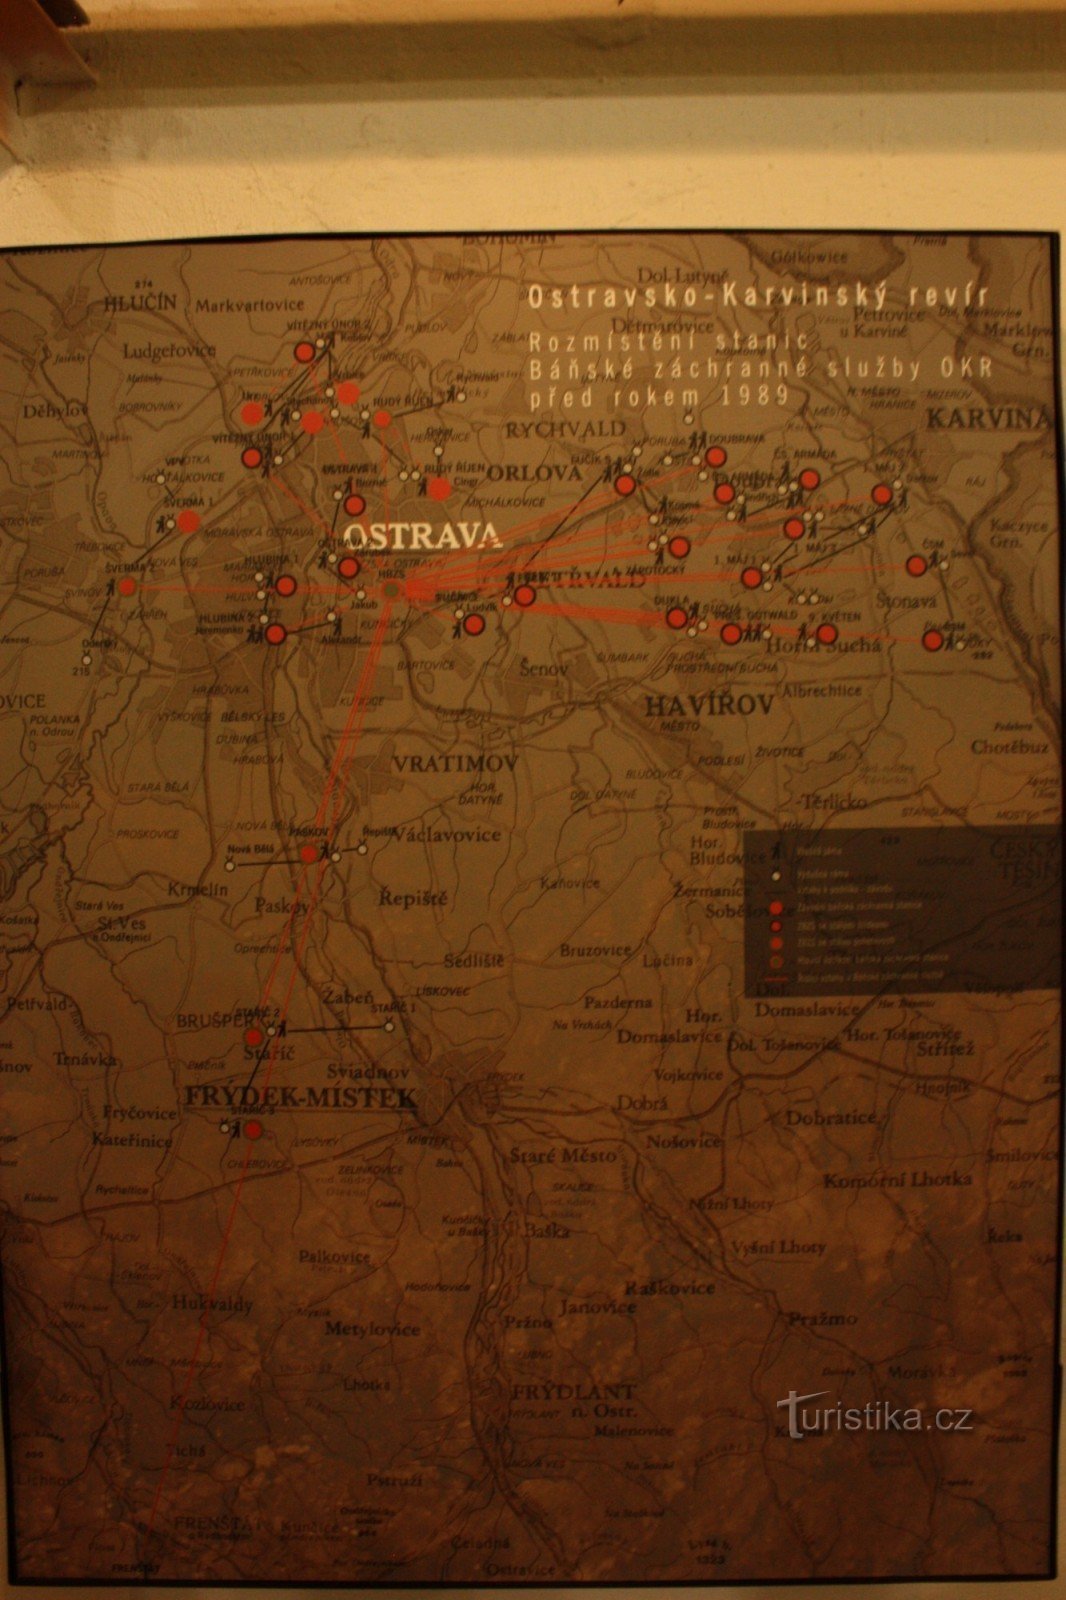 Rozmístění stanic báňské záchranné služby v rámci OKD před rokem 1989